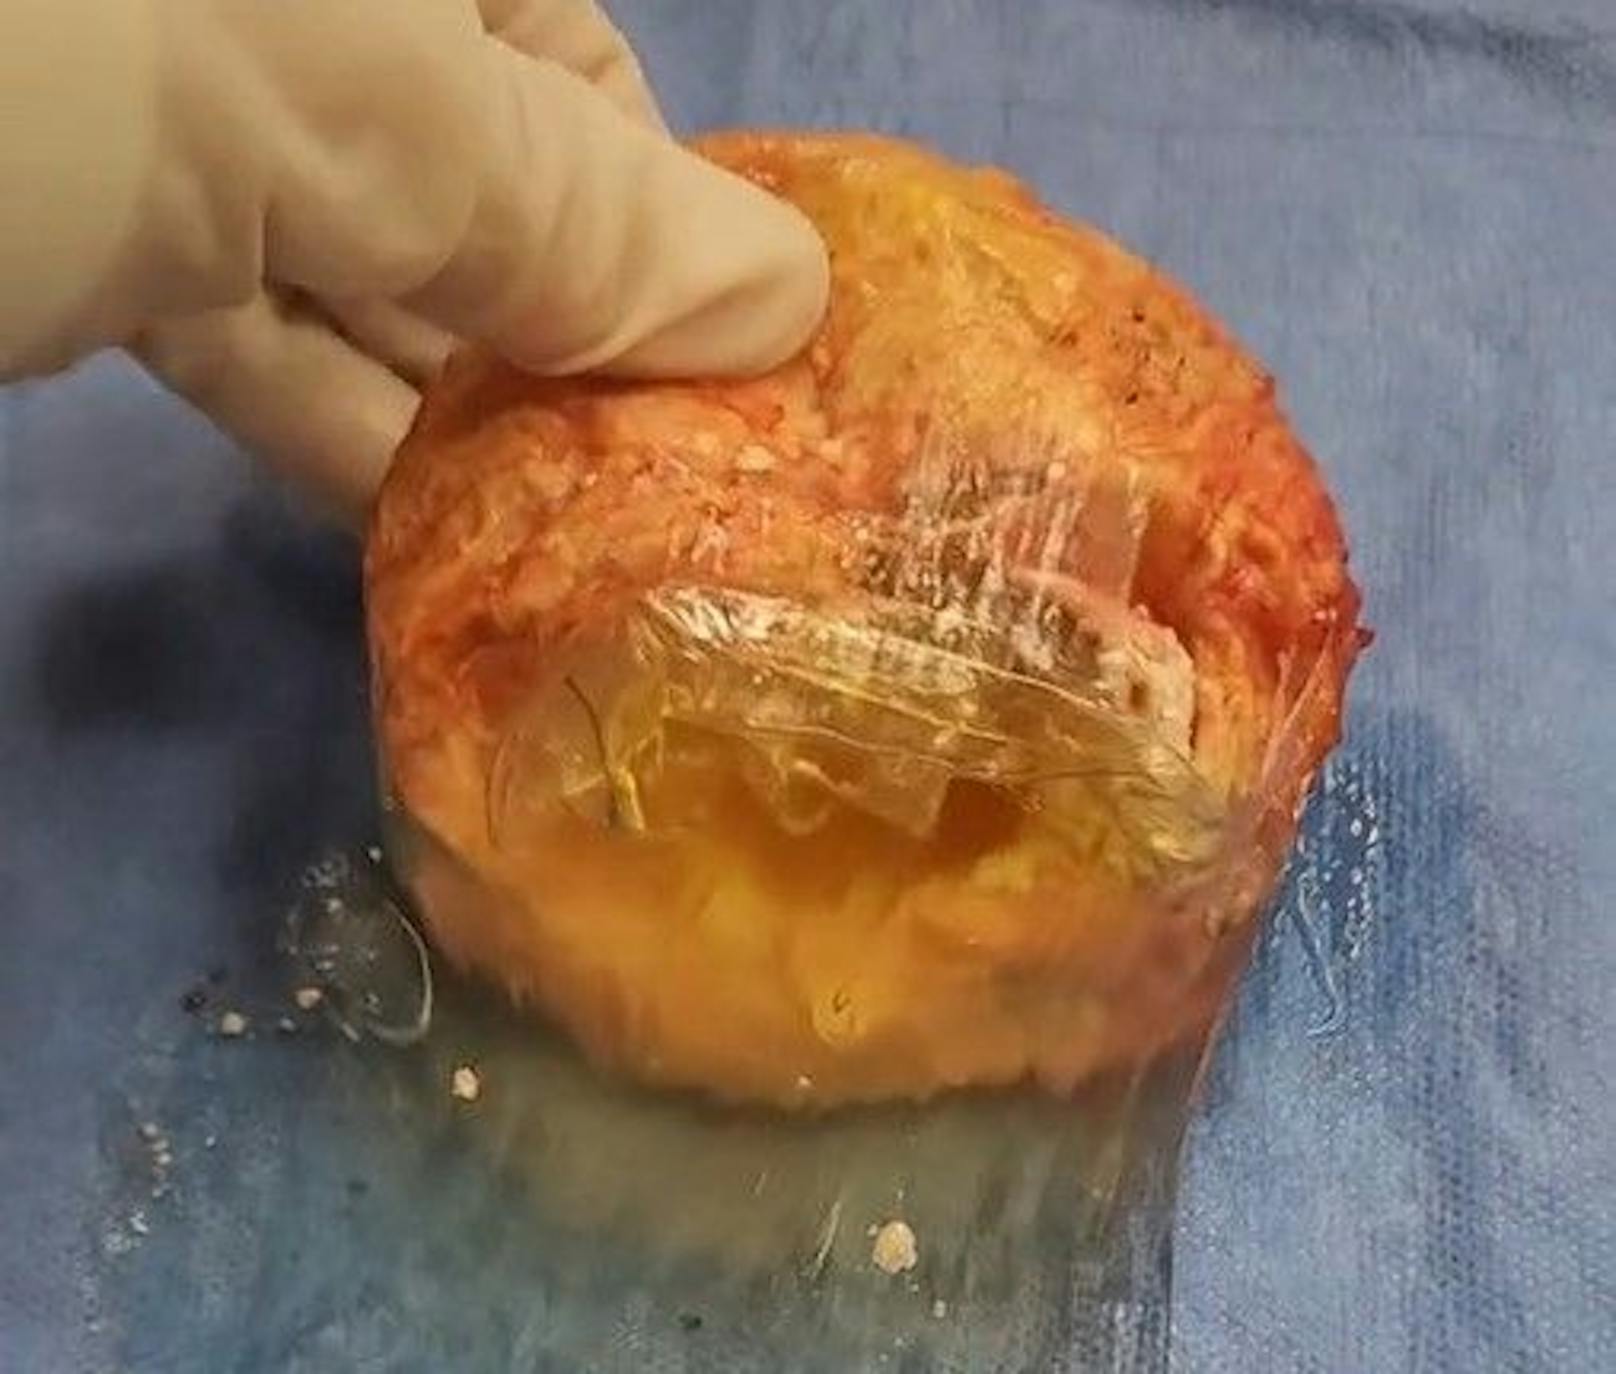 Dr. Castellese zeigt auf TikTok das beschädigte Implantat.&nbsp;